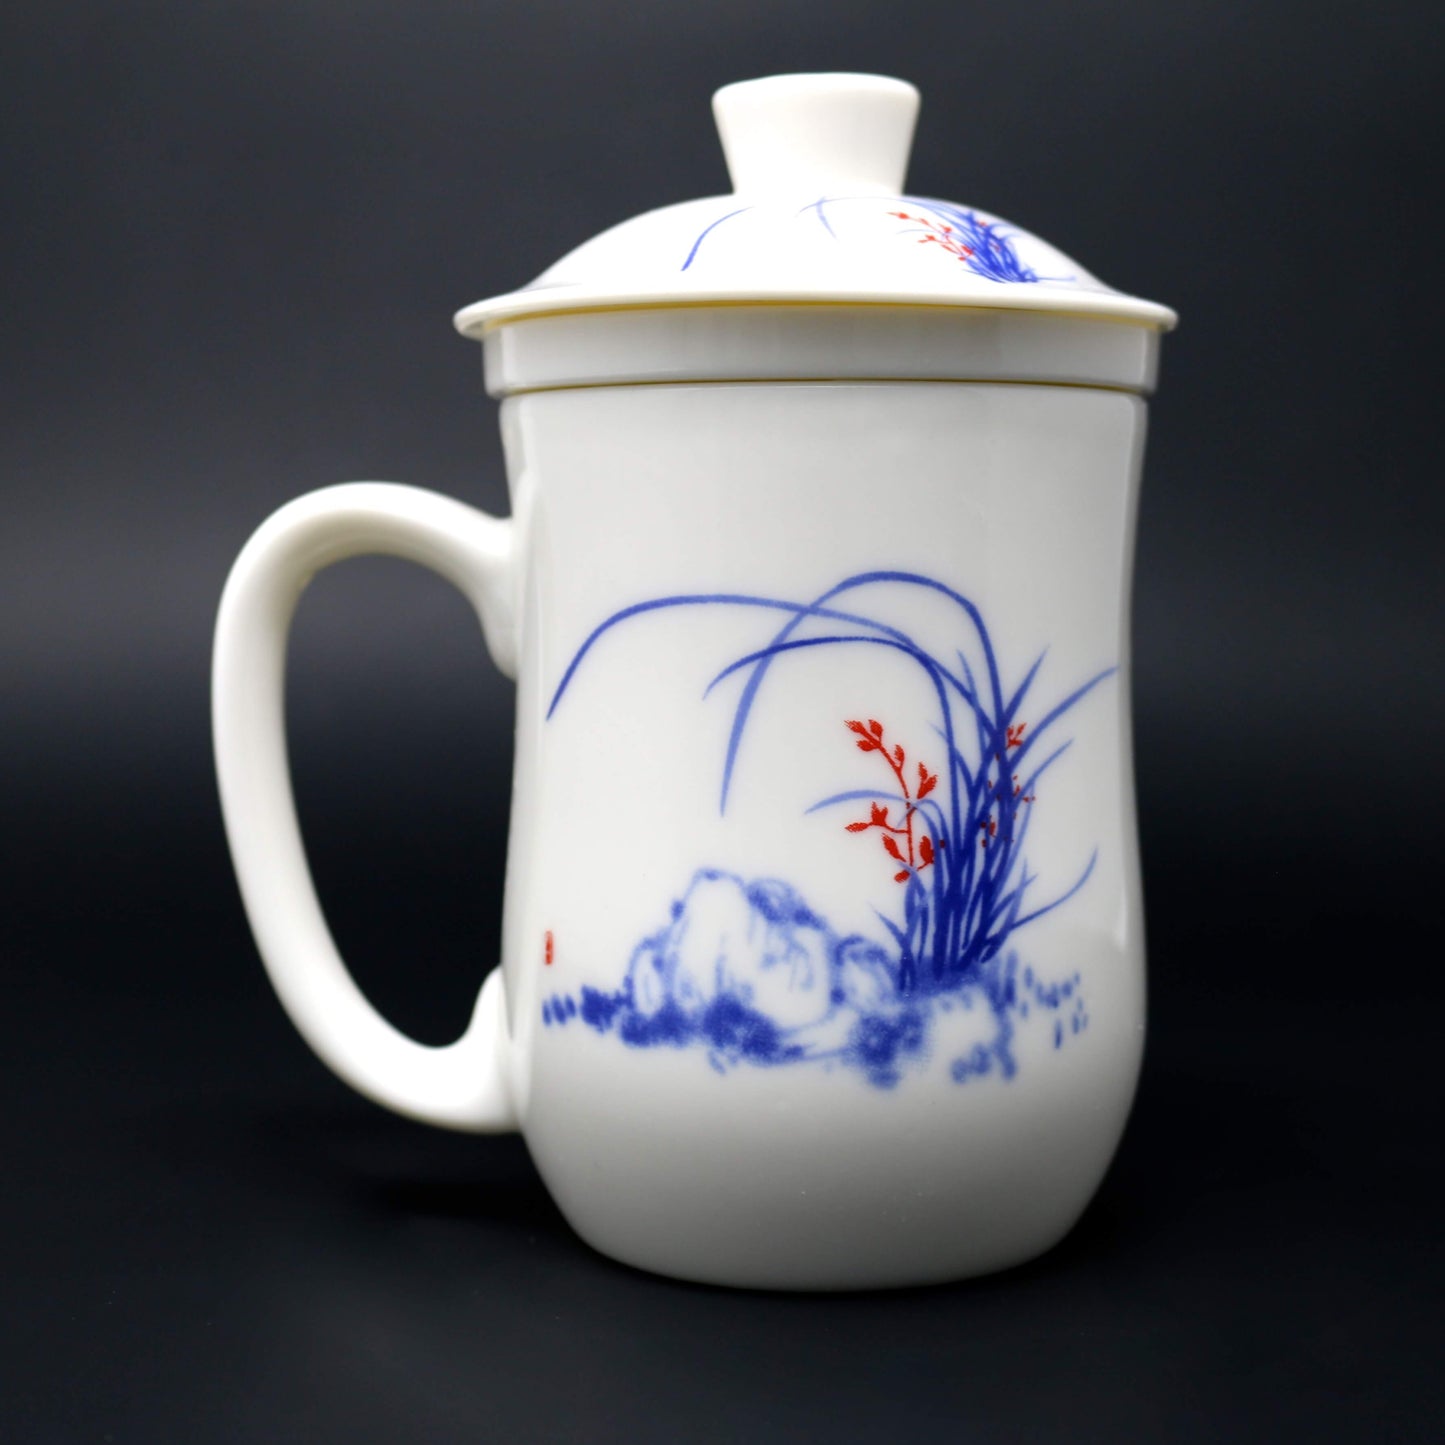 Jade Porcelain Tea Infuser Cup